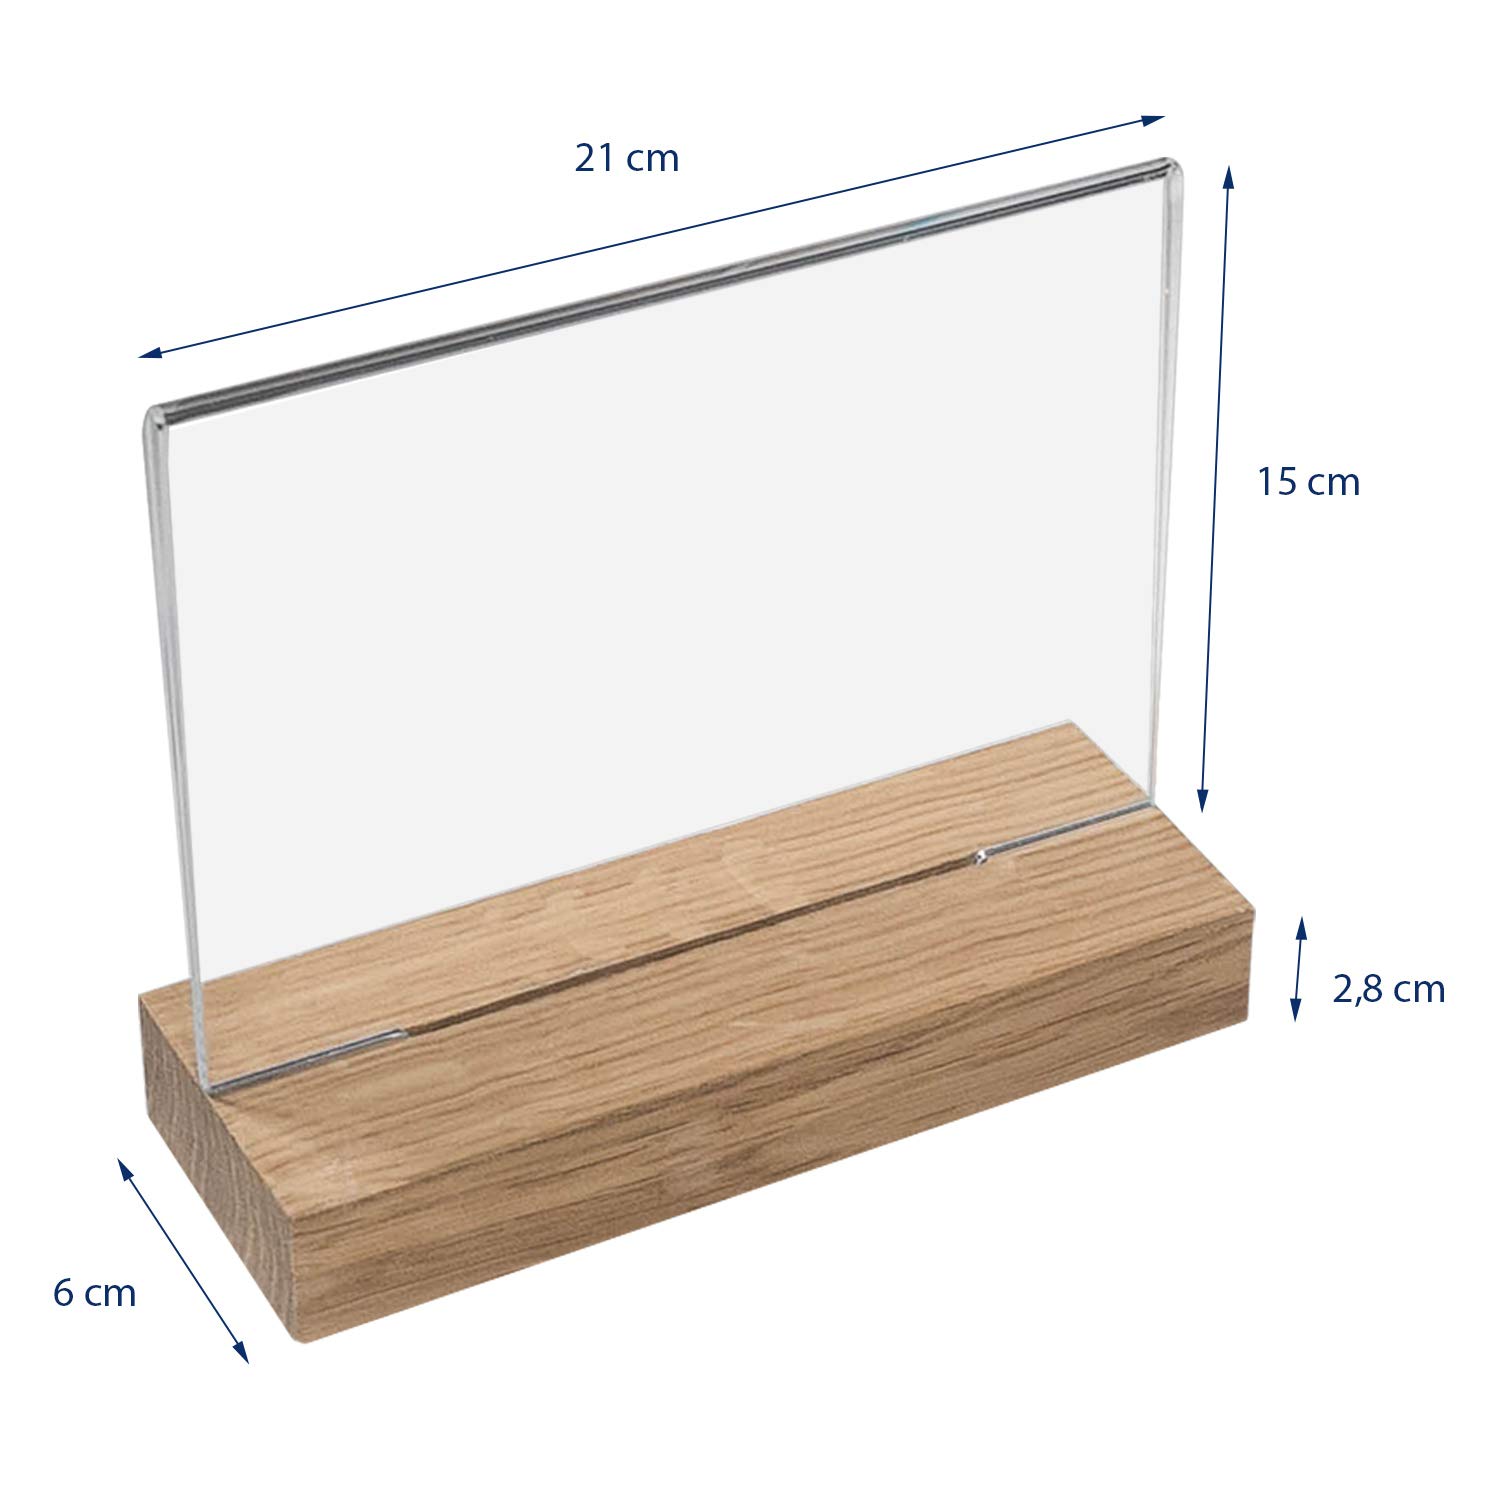 HMF 10x Acryl Tischaufsteller mit Holzfuß DIN A5 Querformat